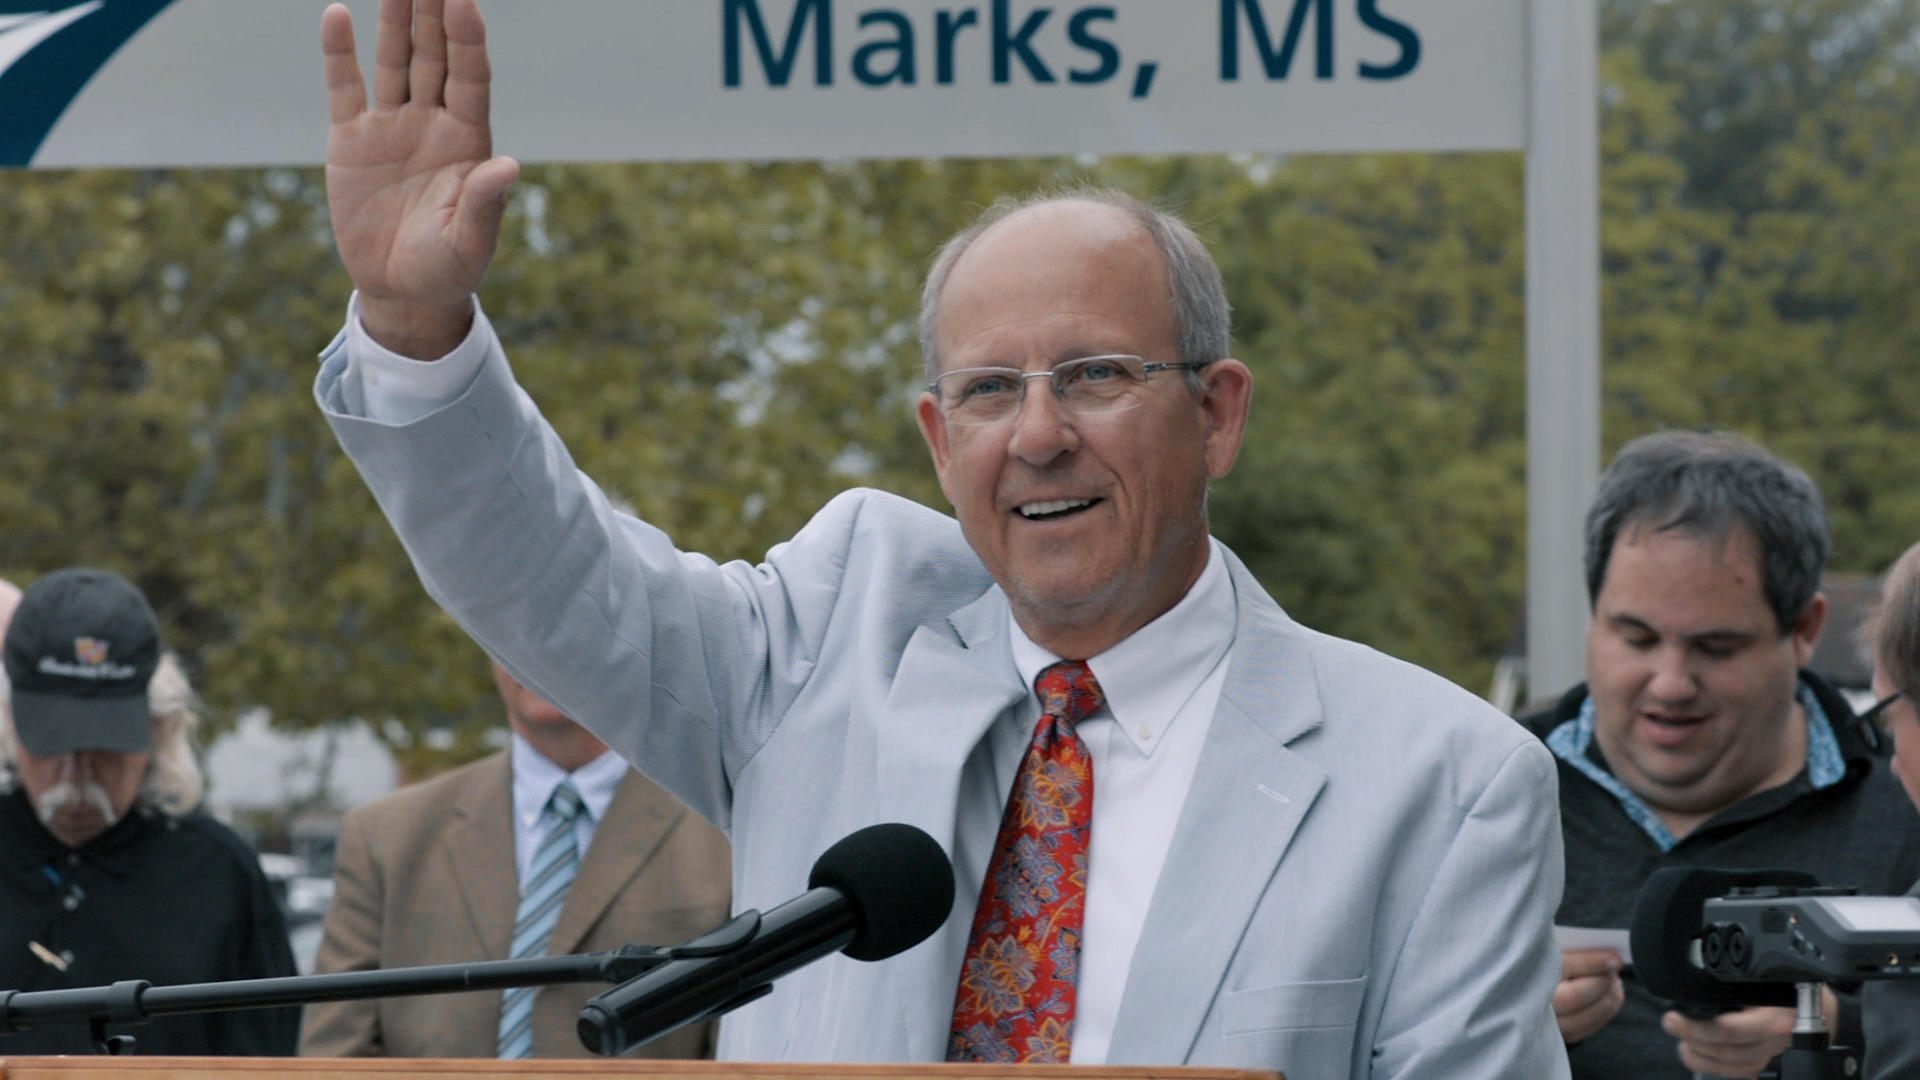 Photo of man at podium, waving